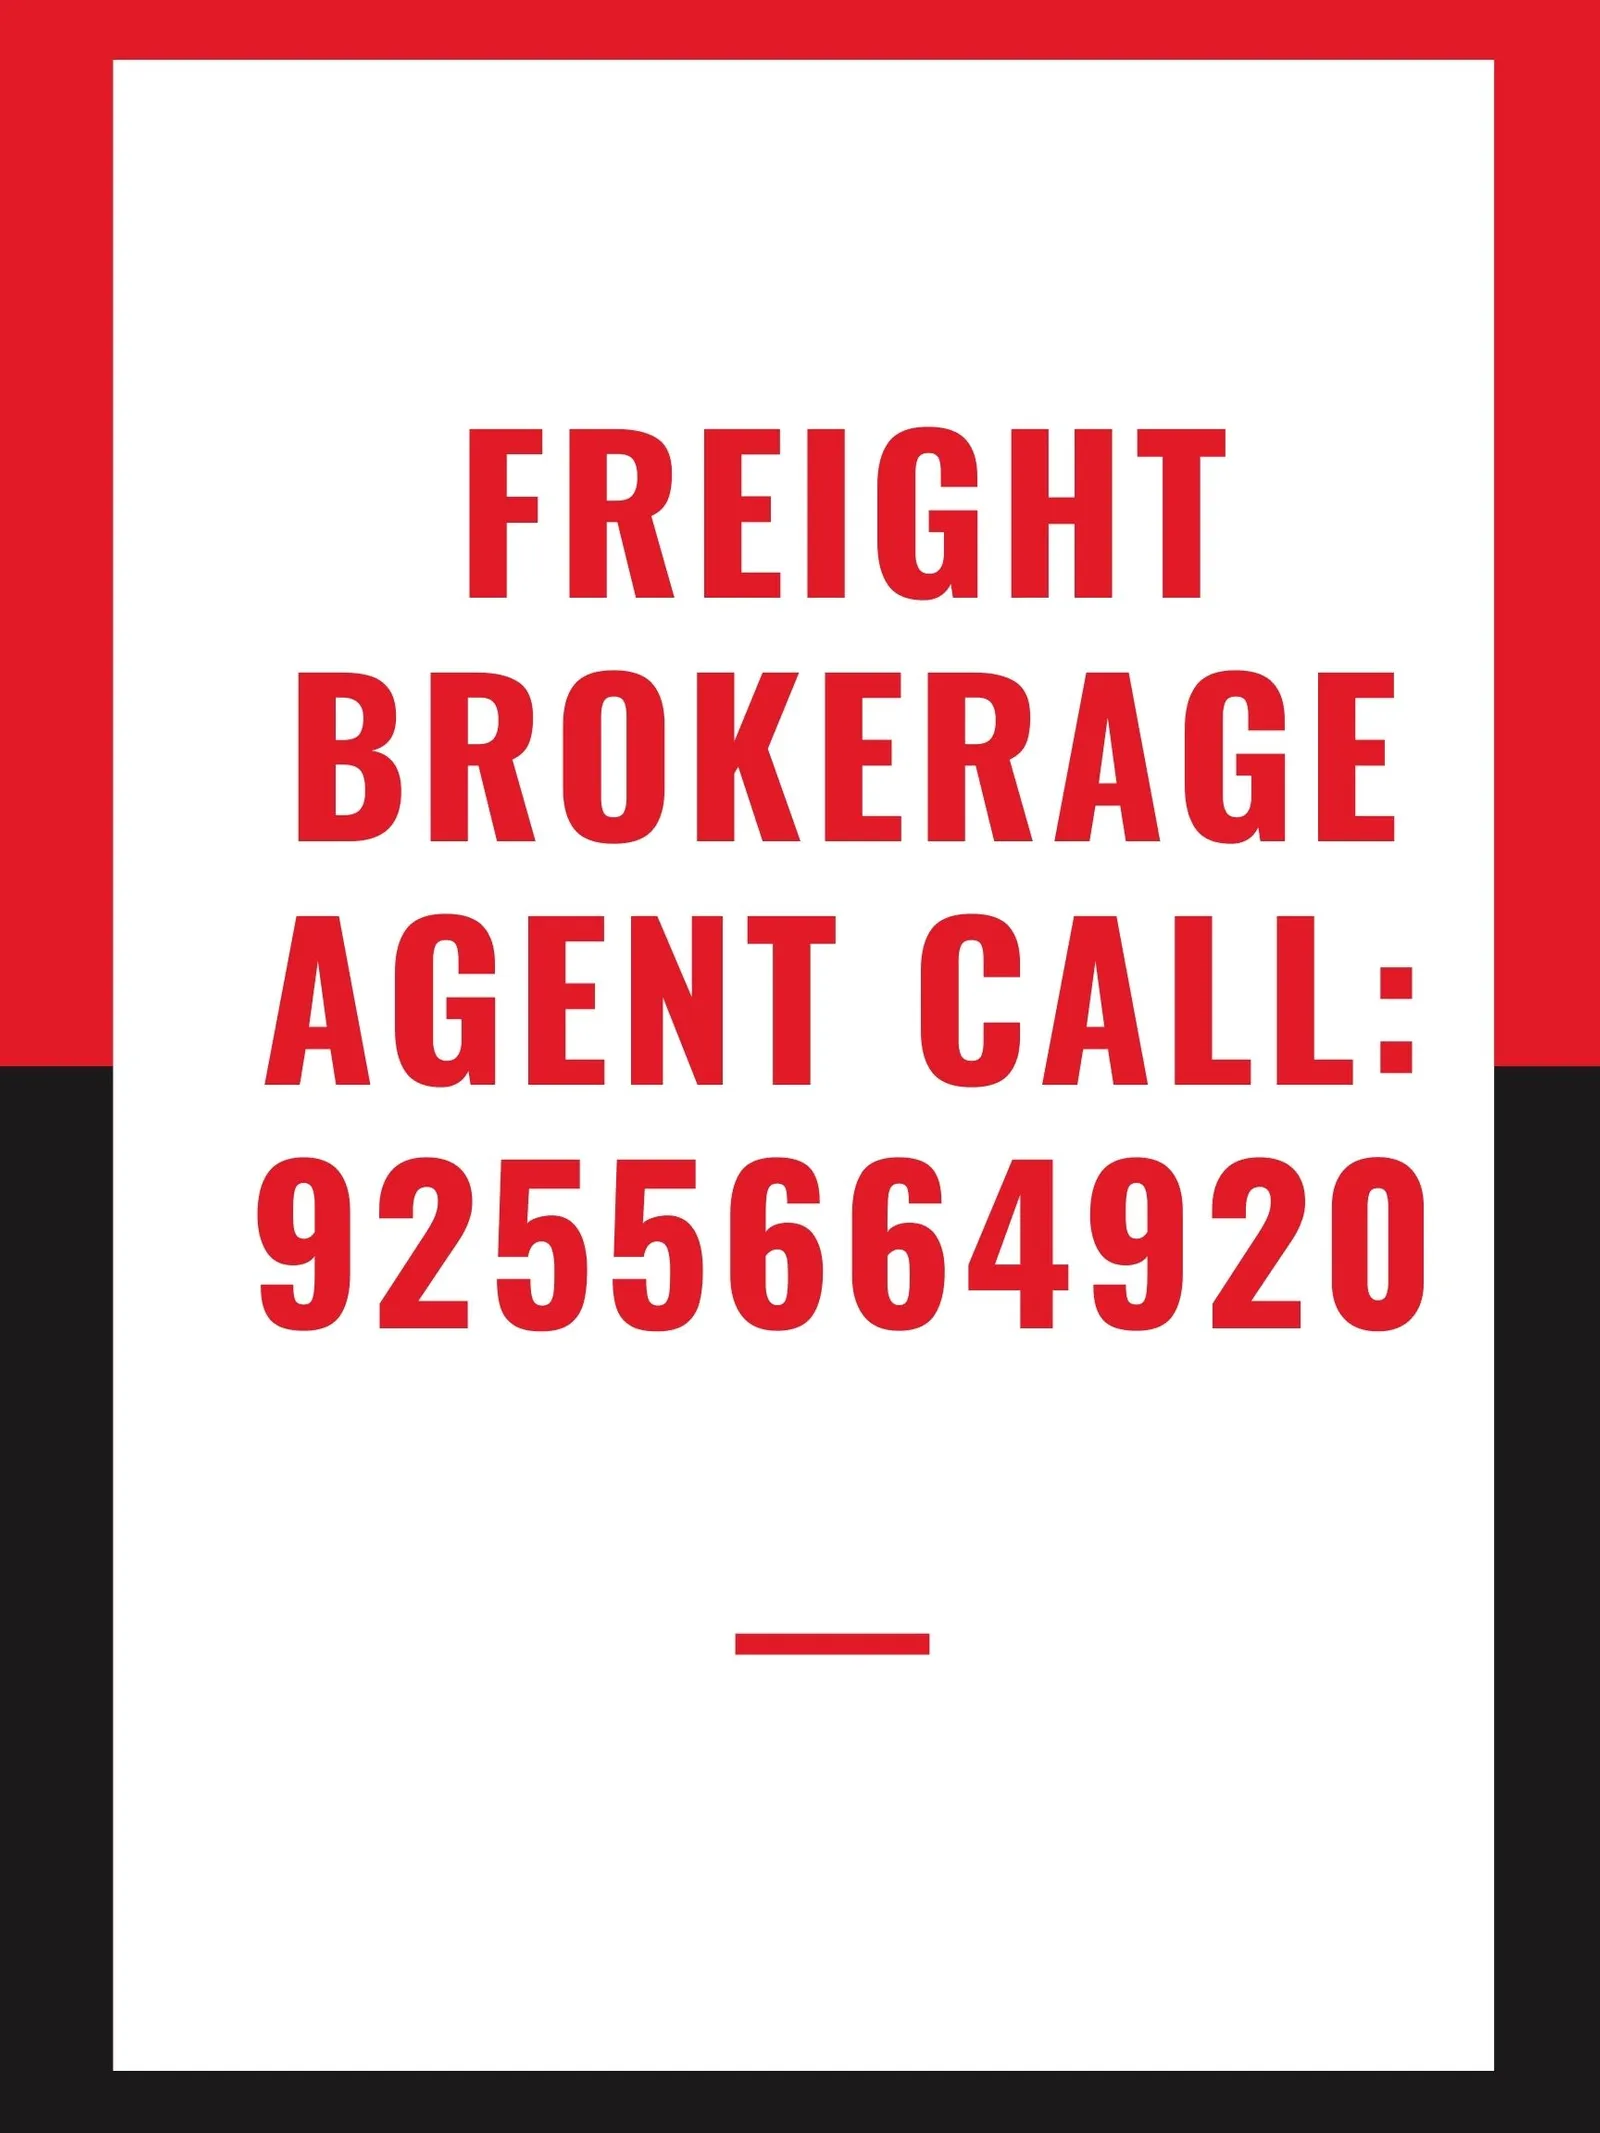 9255664920 | Freight Brokerage Agent